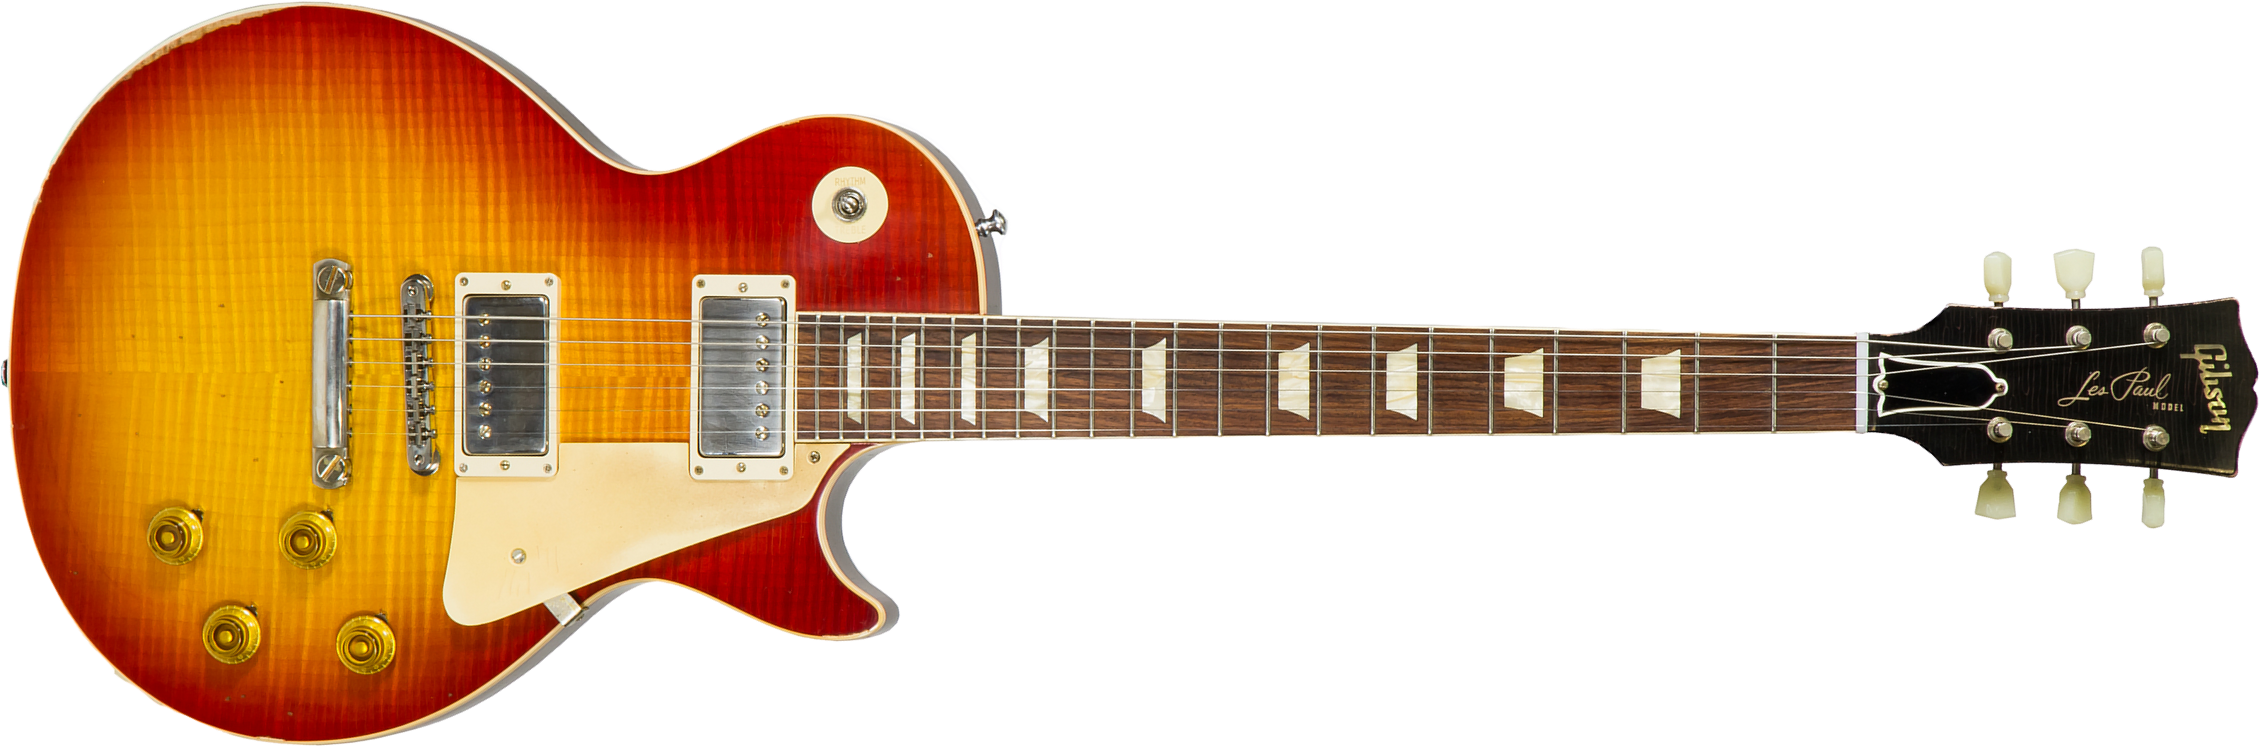 Gibson Custom Shop M2m Les Paul Standard 1958 Reissue 2019 2h Ht Rw #89849 - Heavy Aged First Burst - Enkel gesneden elektrische gitaar - Main picture